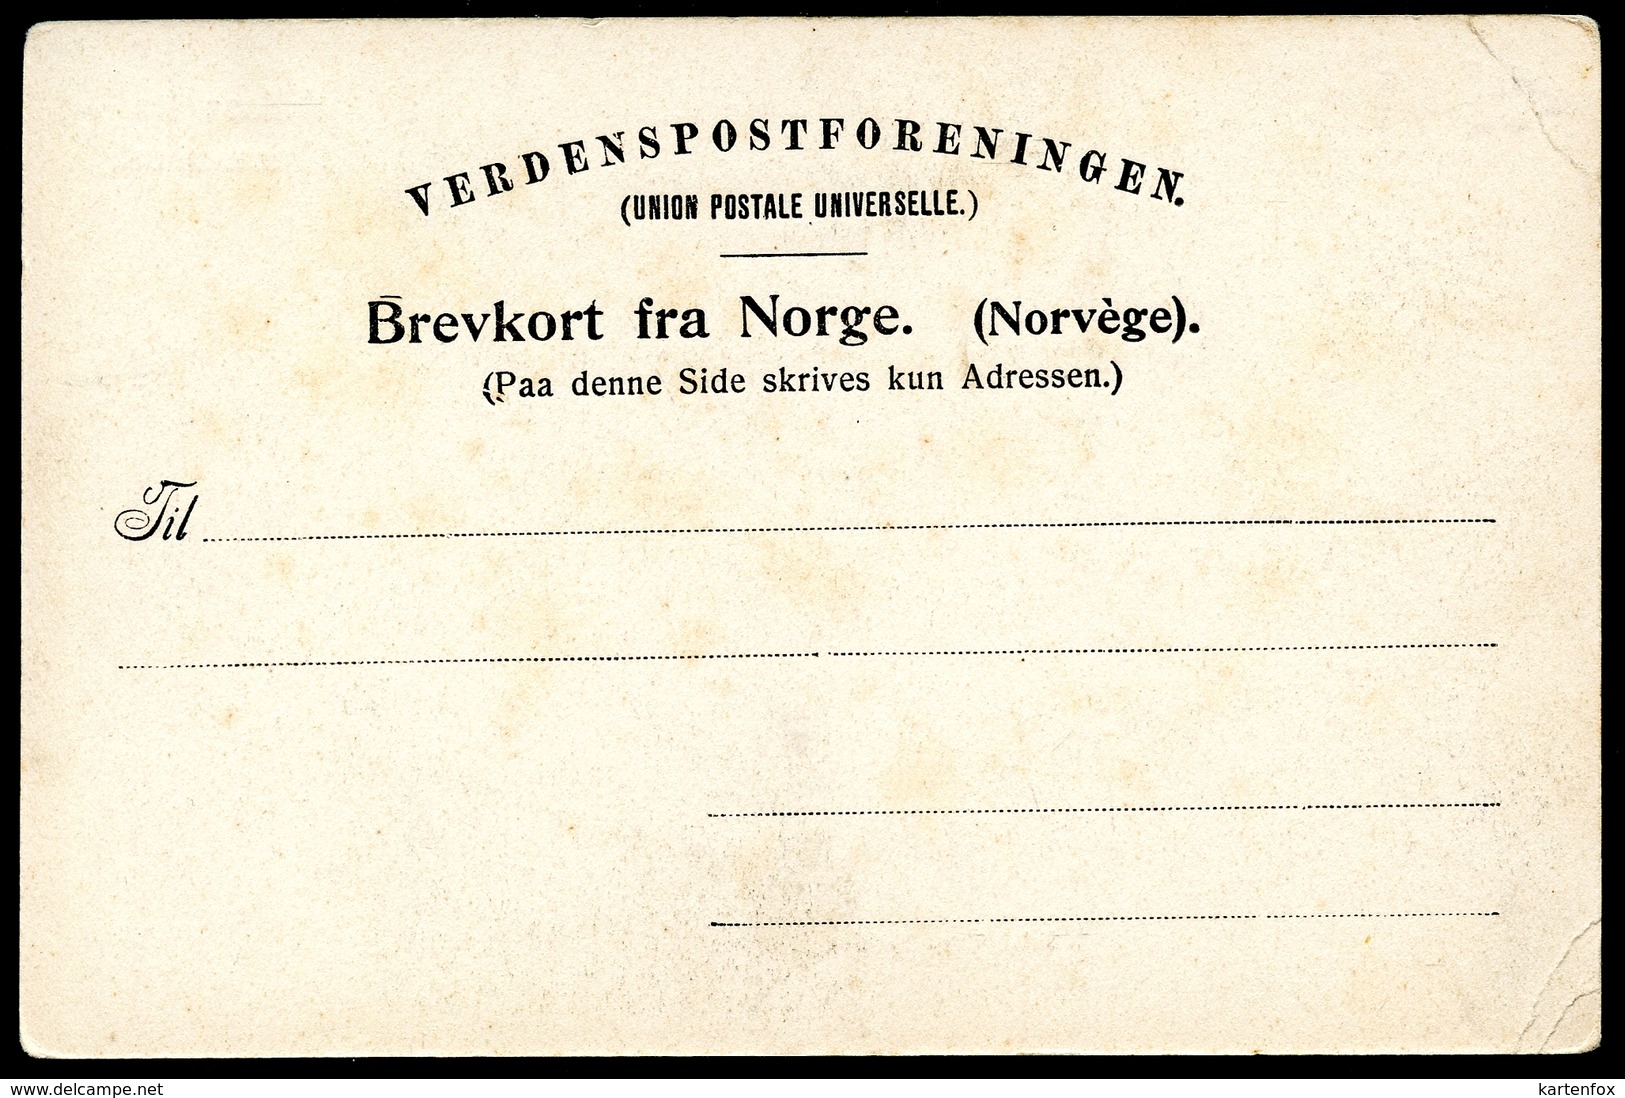 Hammerfest, Hilsen Fra, Um 1905, Udsigt Fra Fjeldet., G. Hagens Forlag - Norwegen